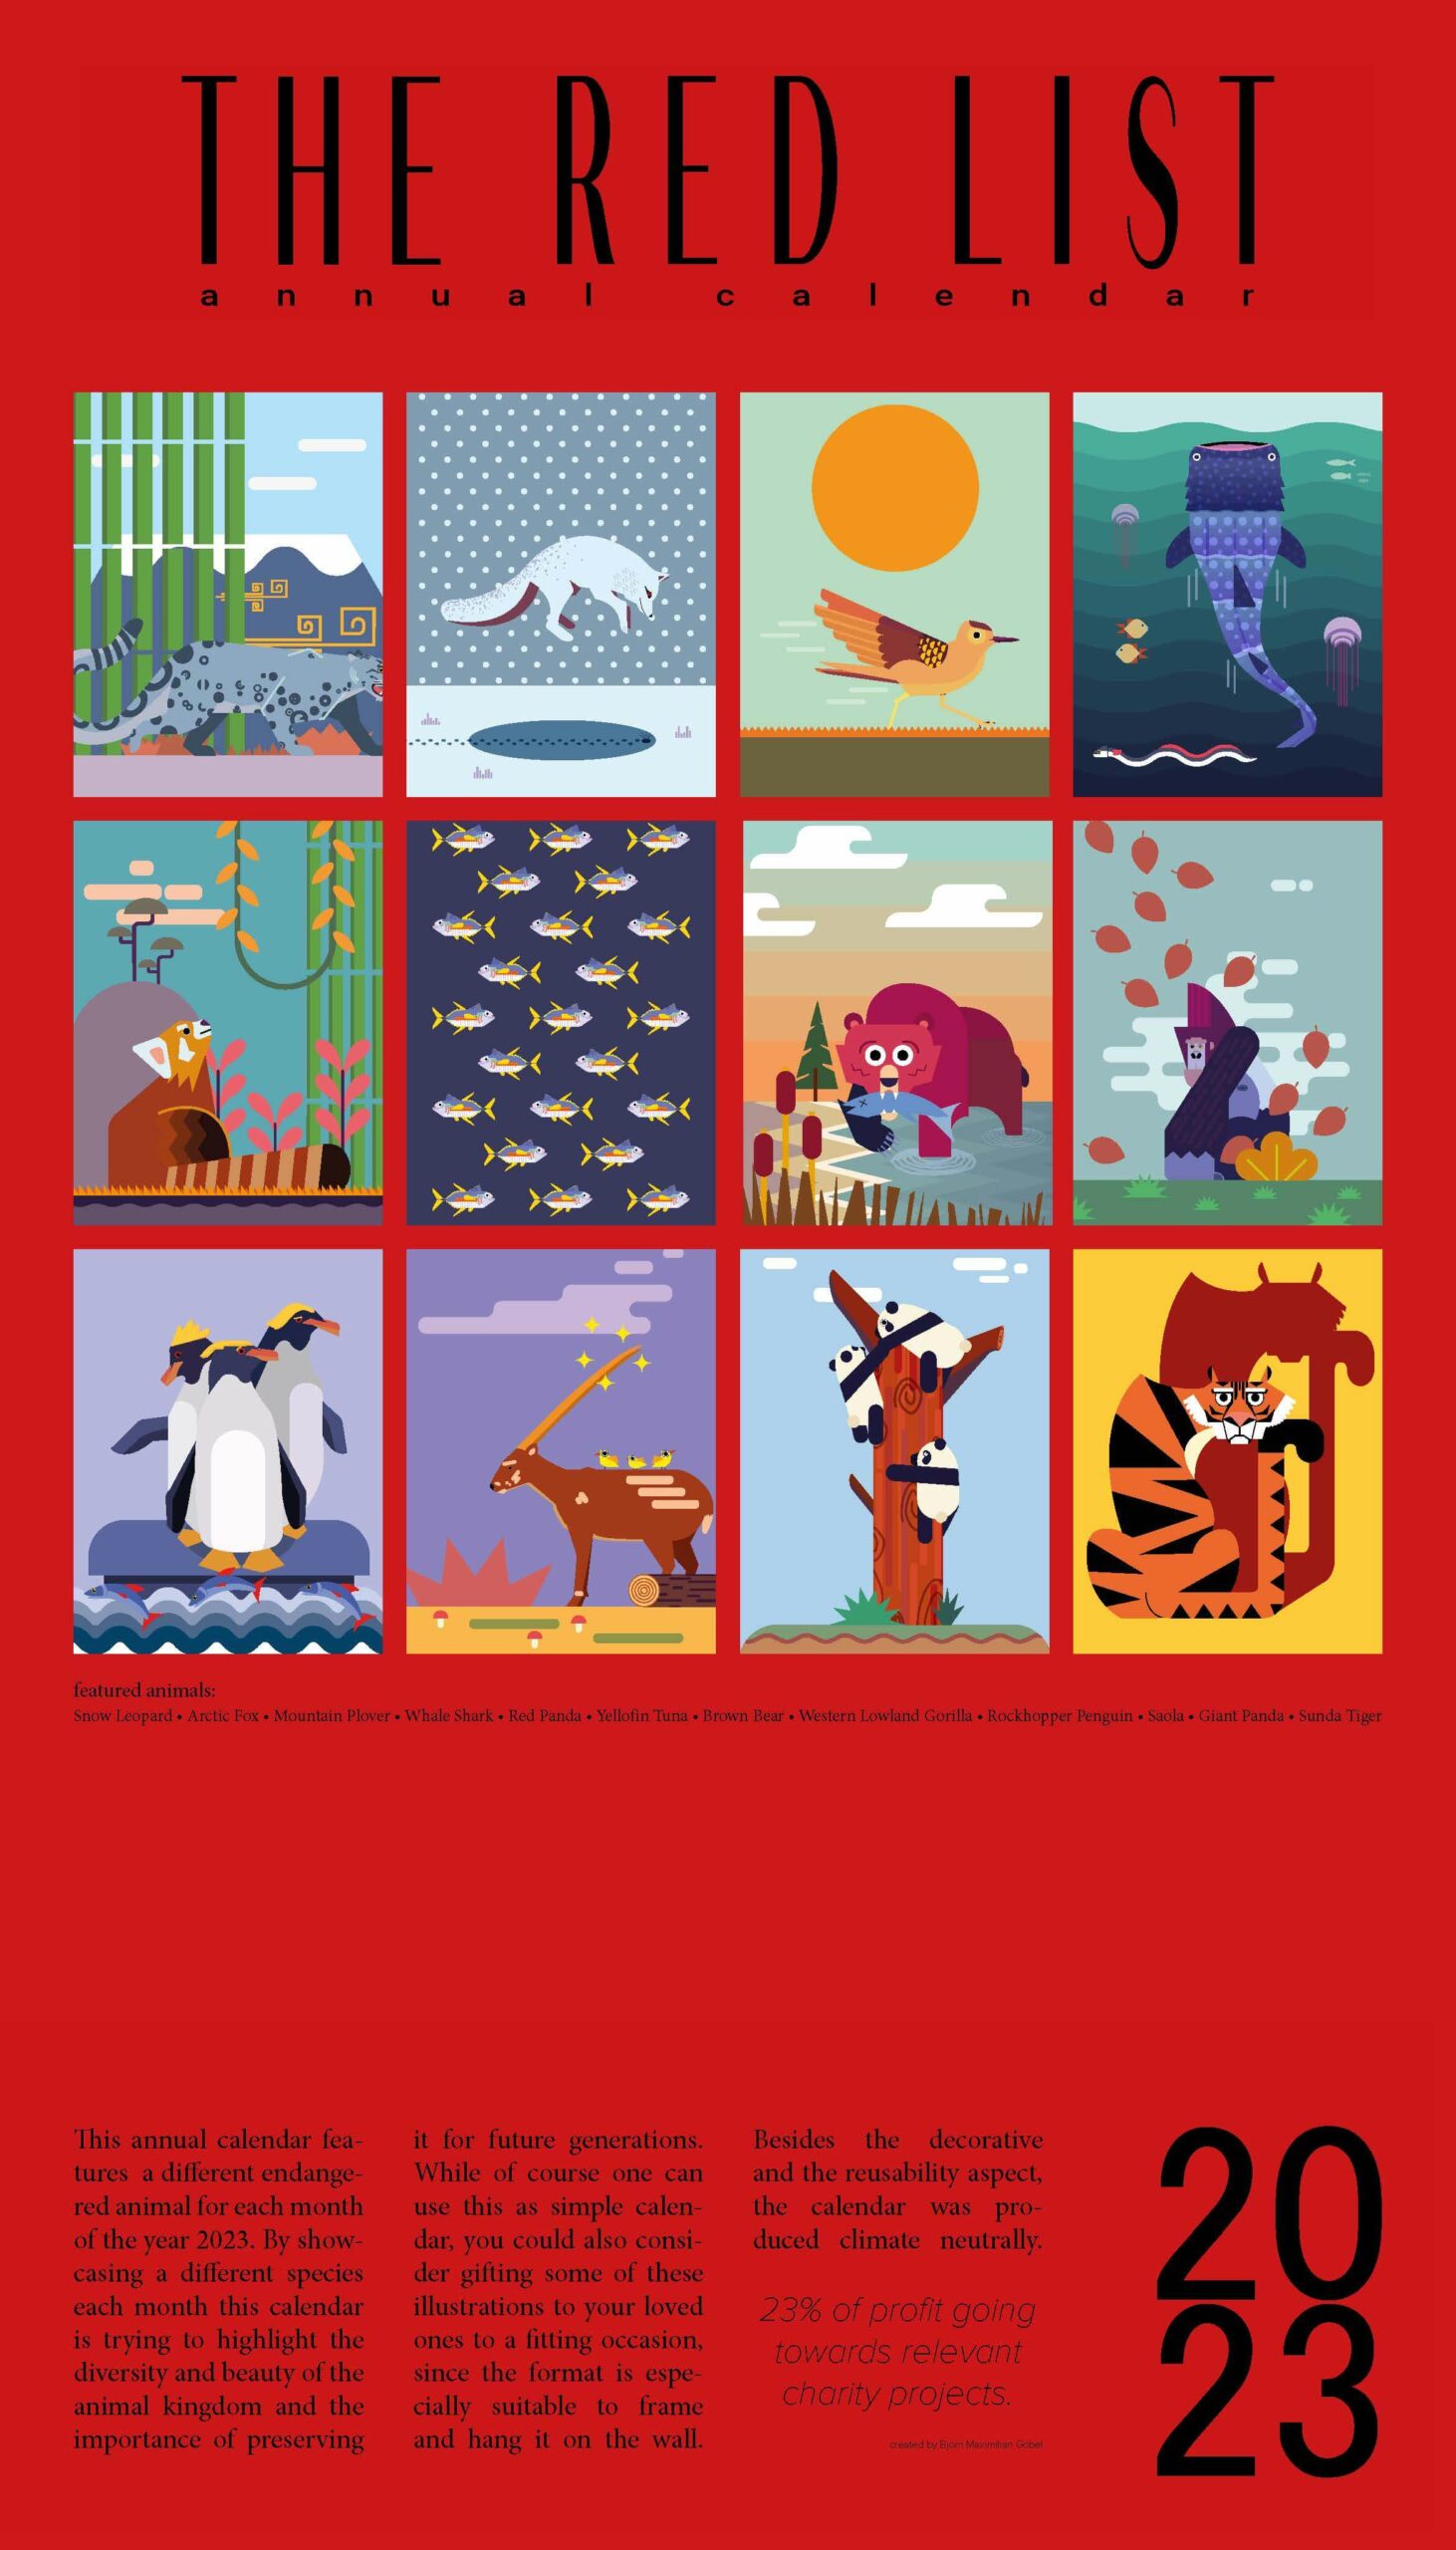 Abschlussprojekt Grafikdesign OfG / Online-Schule für Gestaltung. Thema Kalender für bedrohte Tierarten